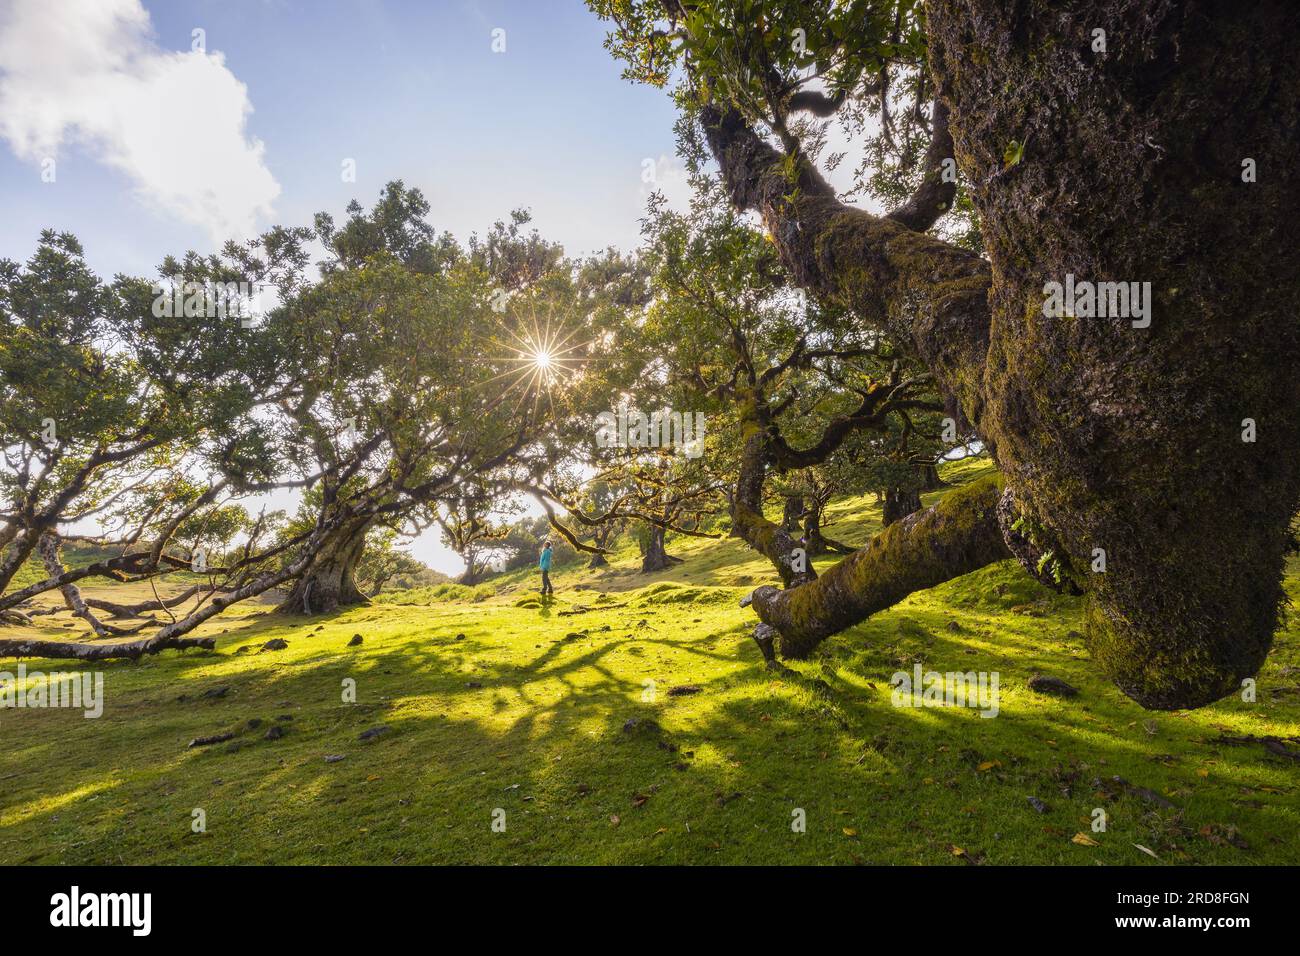 La maestosa Foresta Fanal in un giorno primaverile con alberi di laurisilva e una persona al tramonto, Porto Moniz, Madeira, Portogallo, Atlantico, Europa Foto Stock